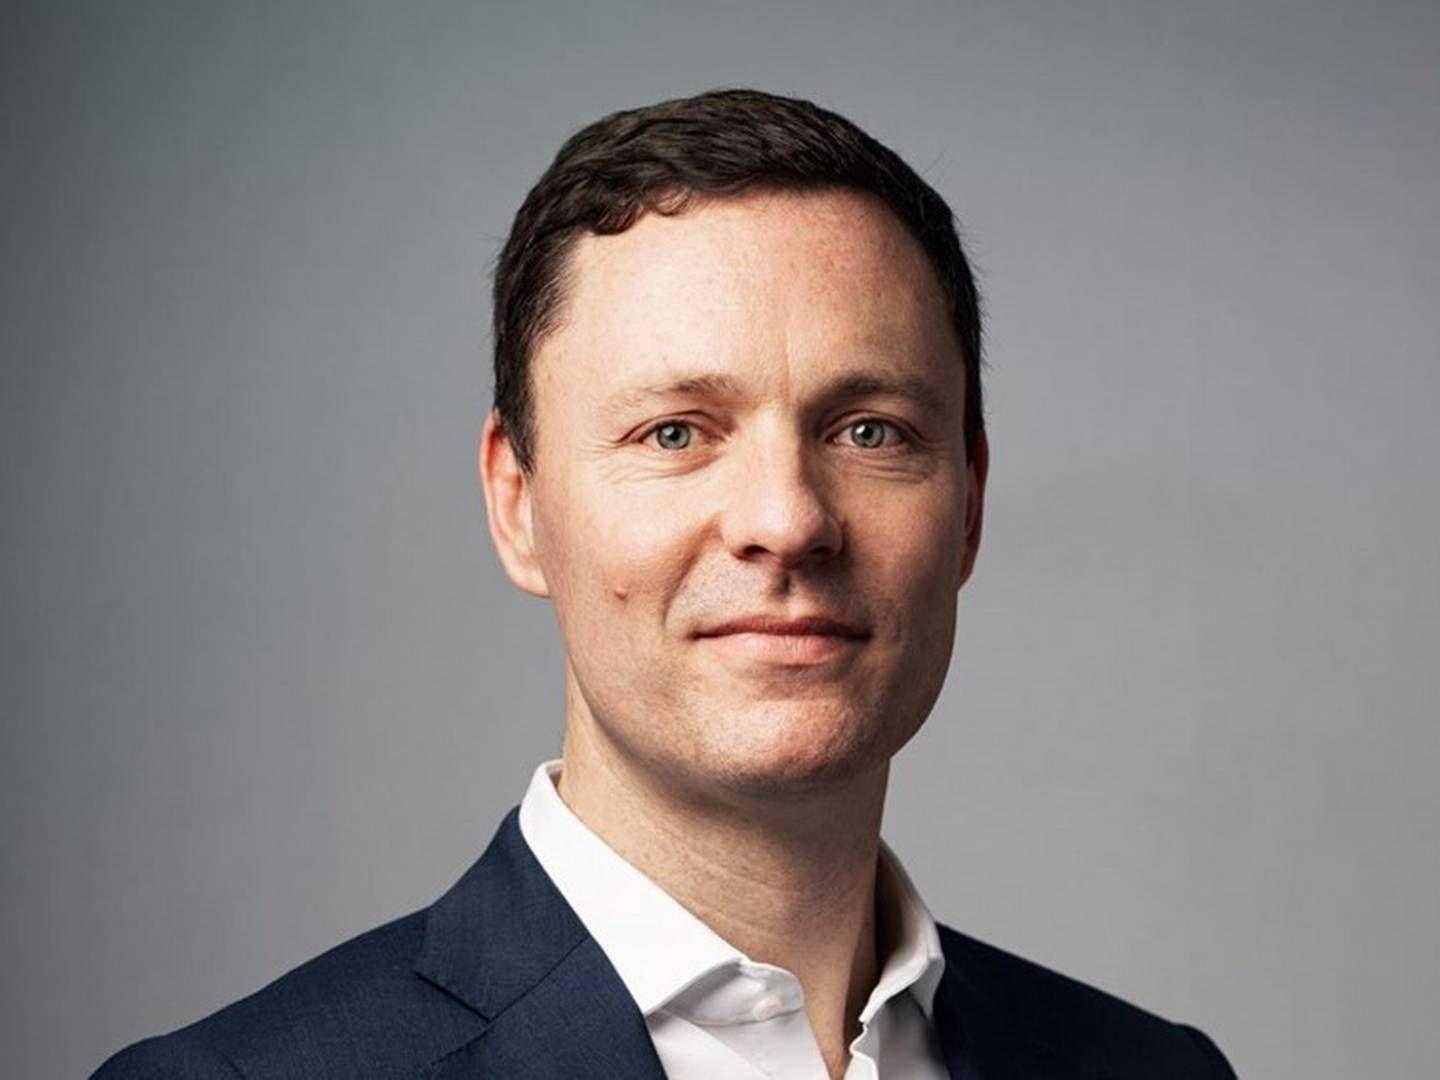 «SVÆRT SKUFFET»: Steffen Wagner, administrerende direktør i Advanz Pharma, som markedsfører Ocaliva, er svært skuffet over CHMPs avgjørelse. | Foto: Advanz Pharma